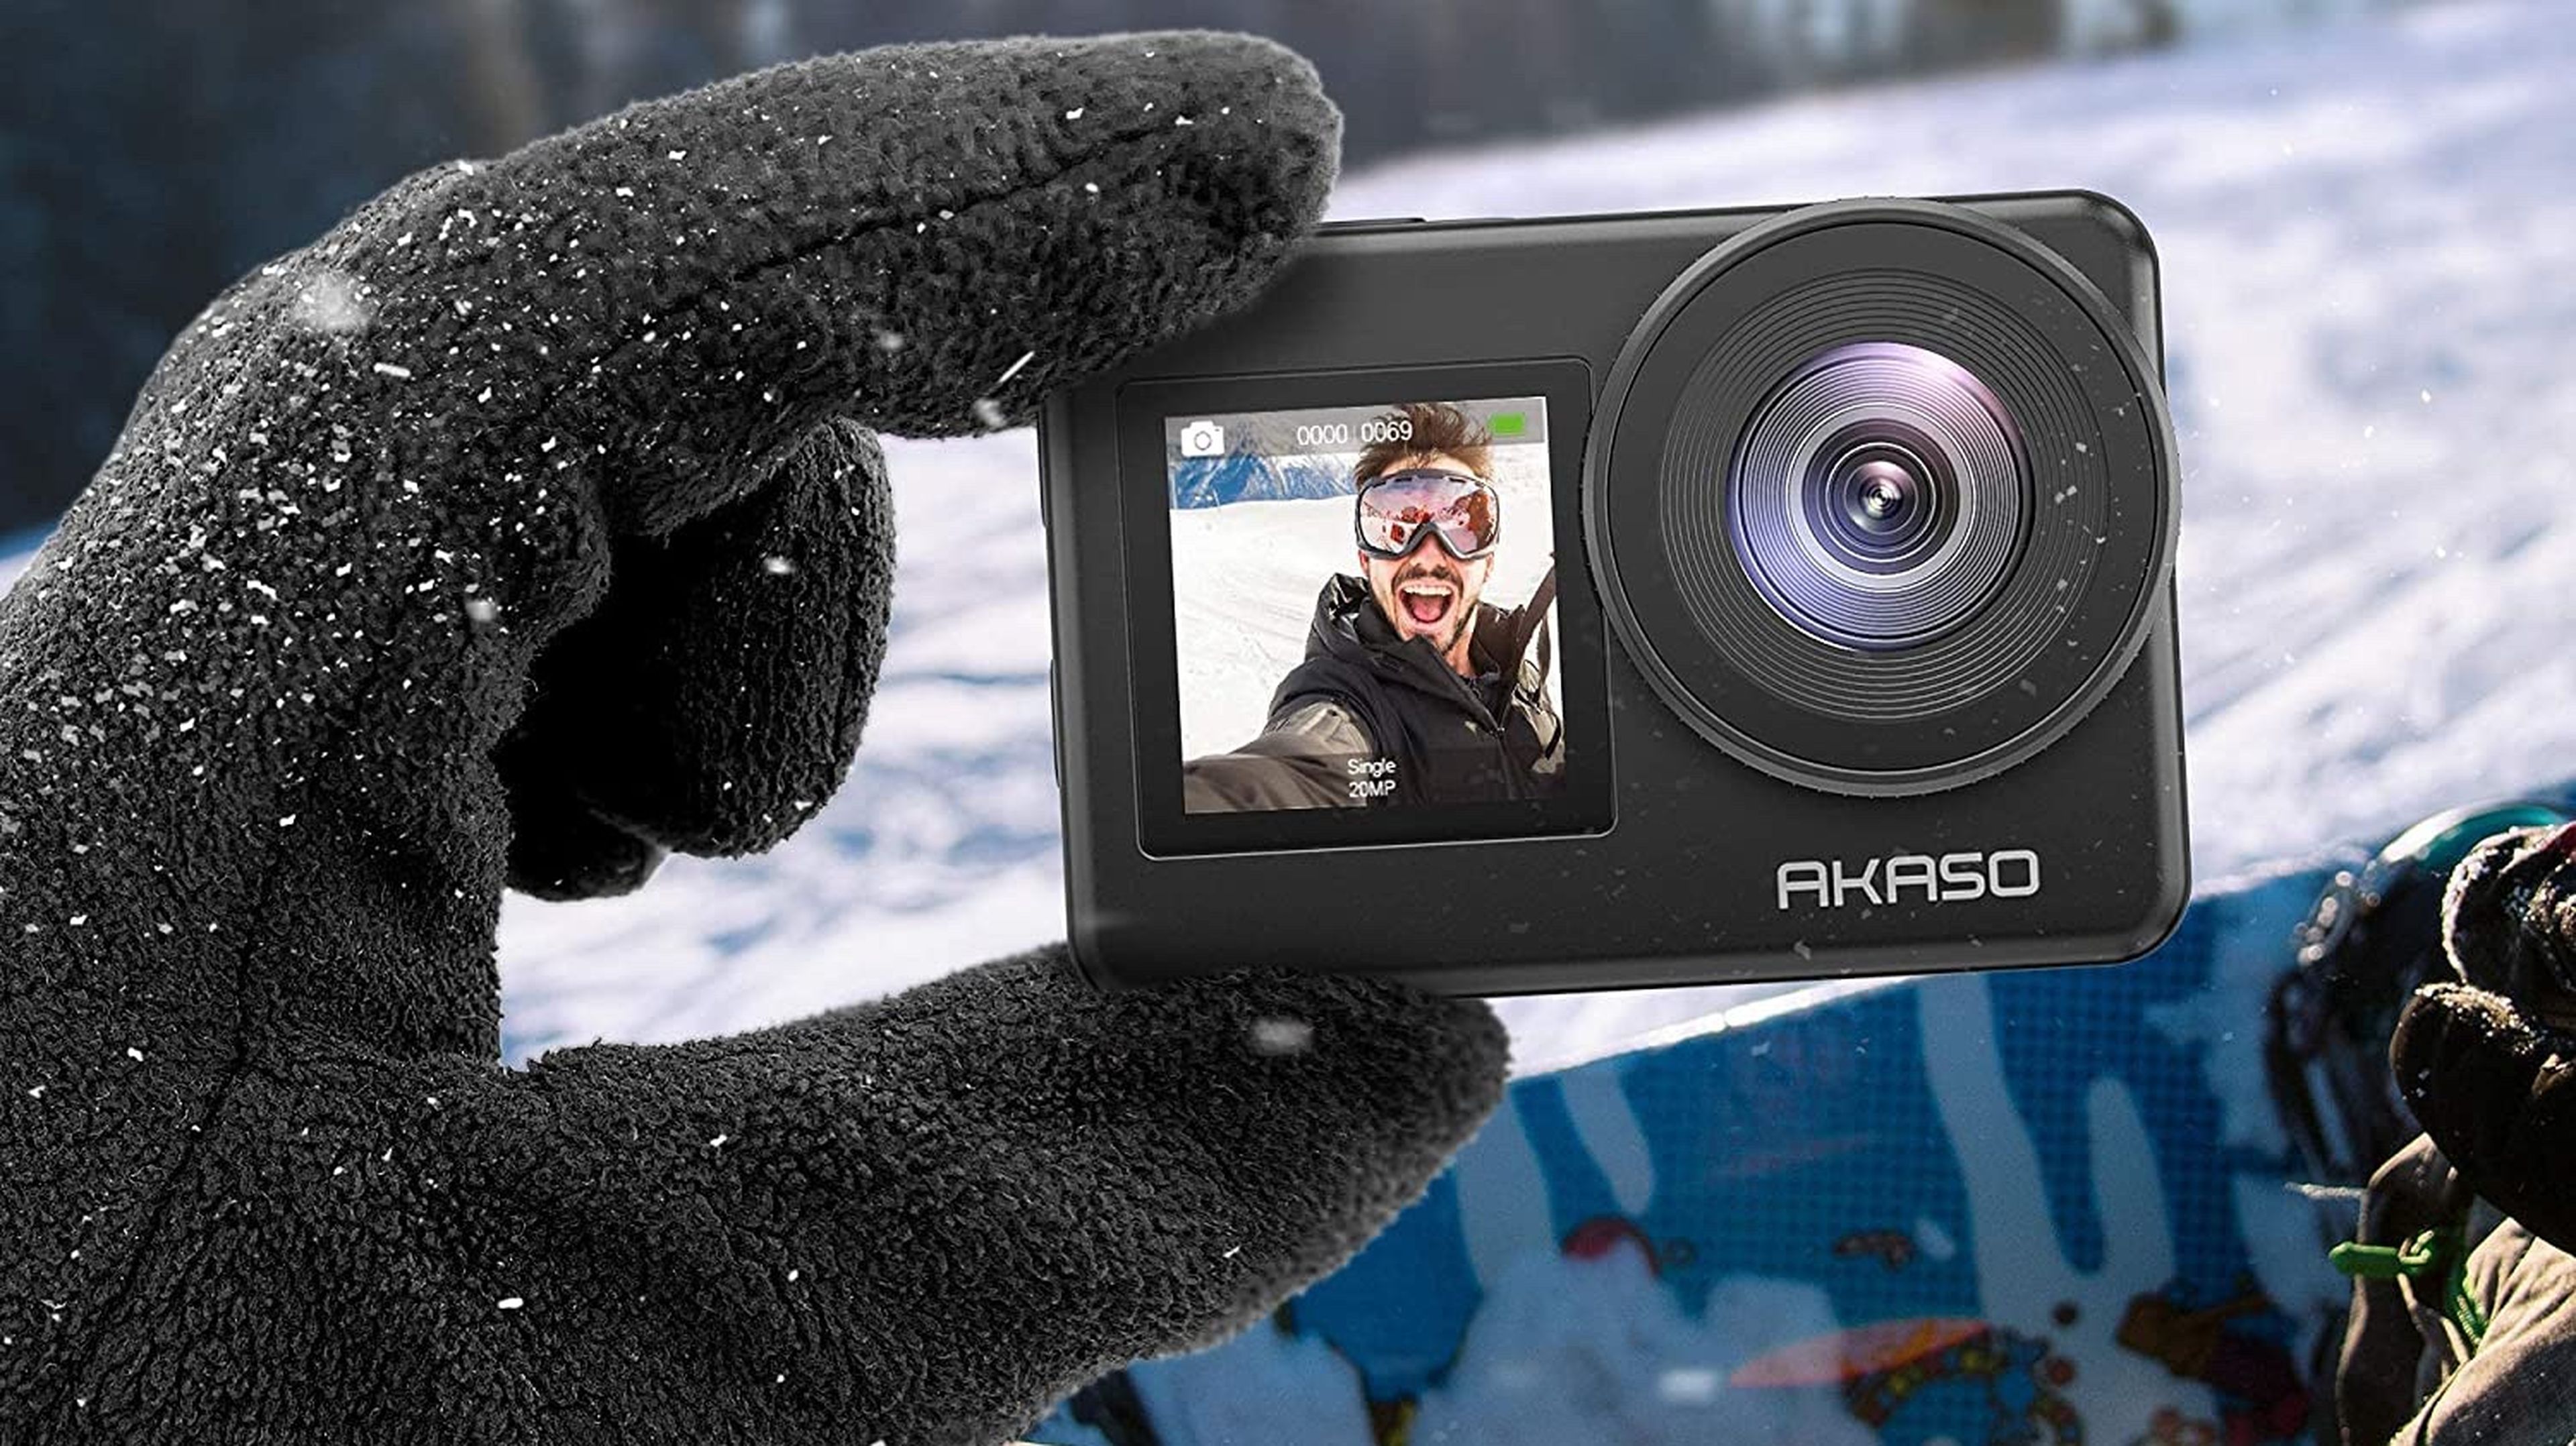 Estas cámaras de acción baratas son una gran alternativa a la GoPro